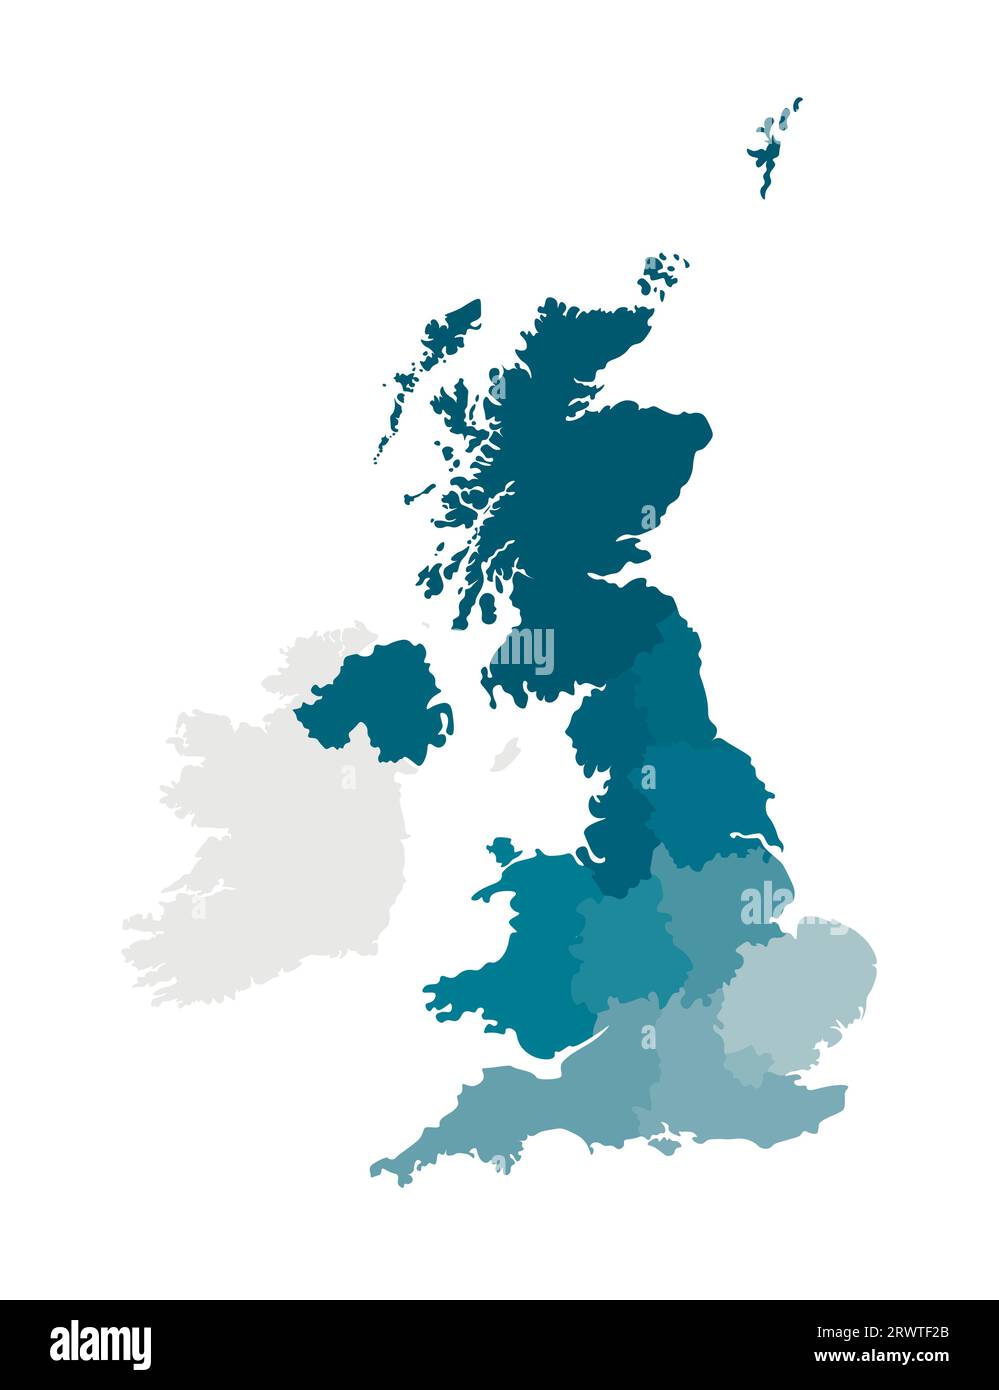 Illustrazione vettoriale isolata della mappa amministrativa semplificata del Regno Unito di Gran Bretagna e Irlanda del Nord. Confini delle regioni. Col Illustrazione Vettoriale